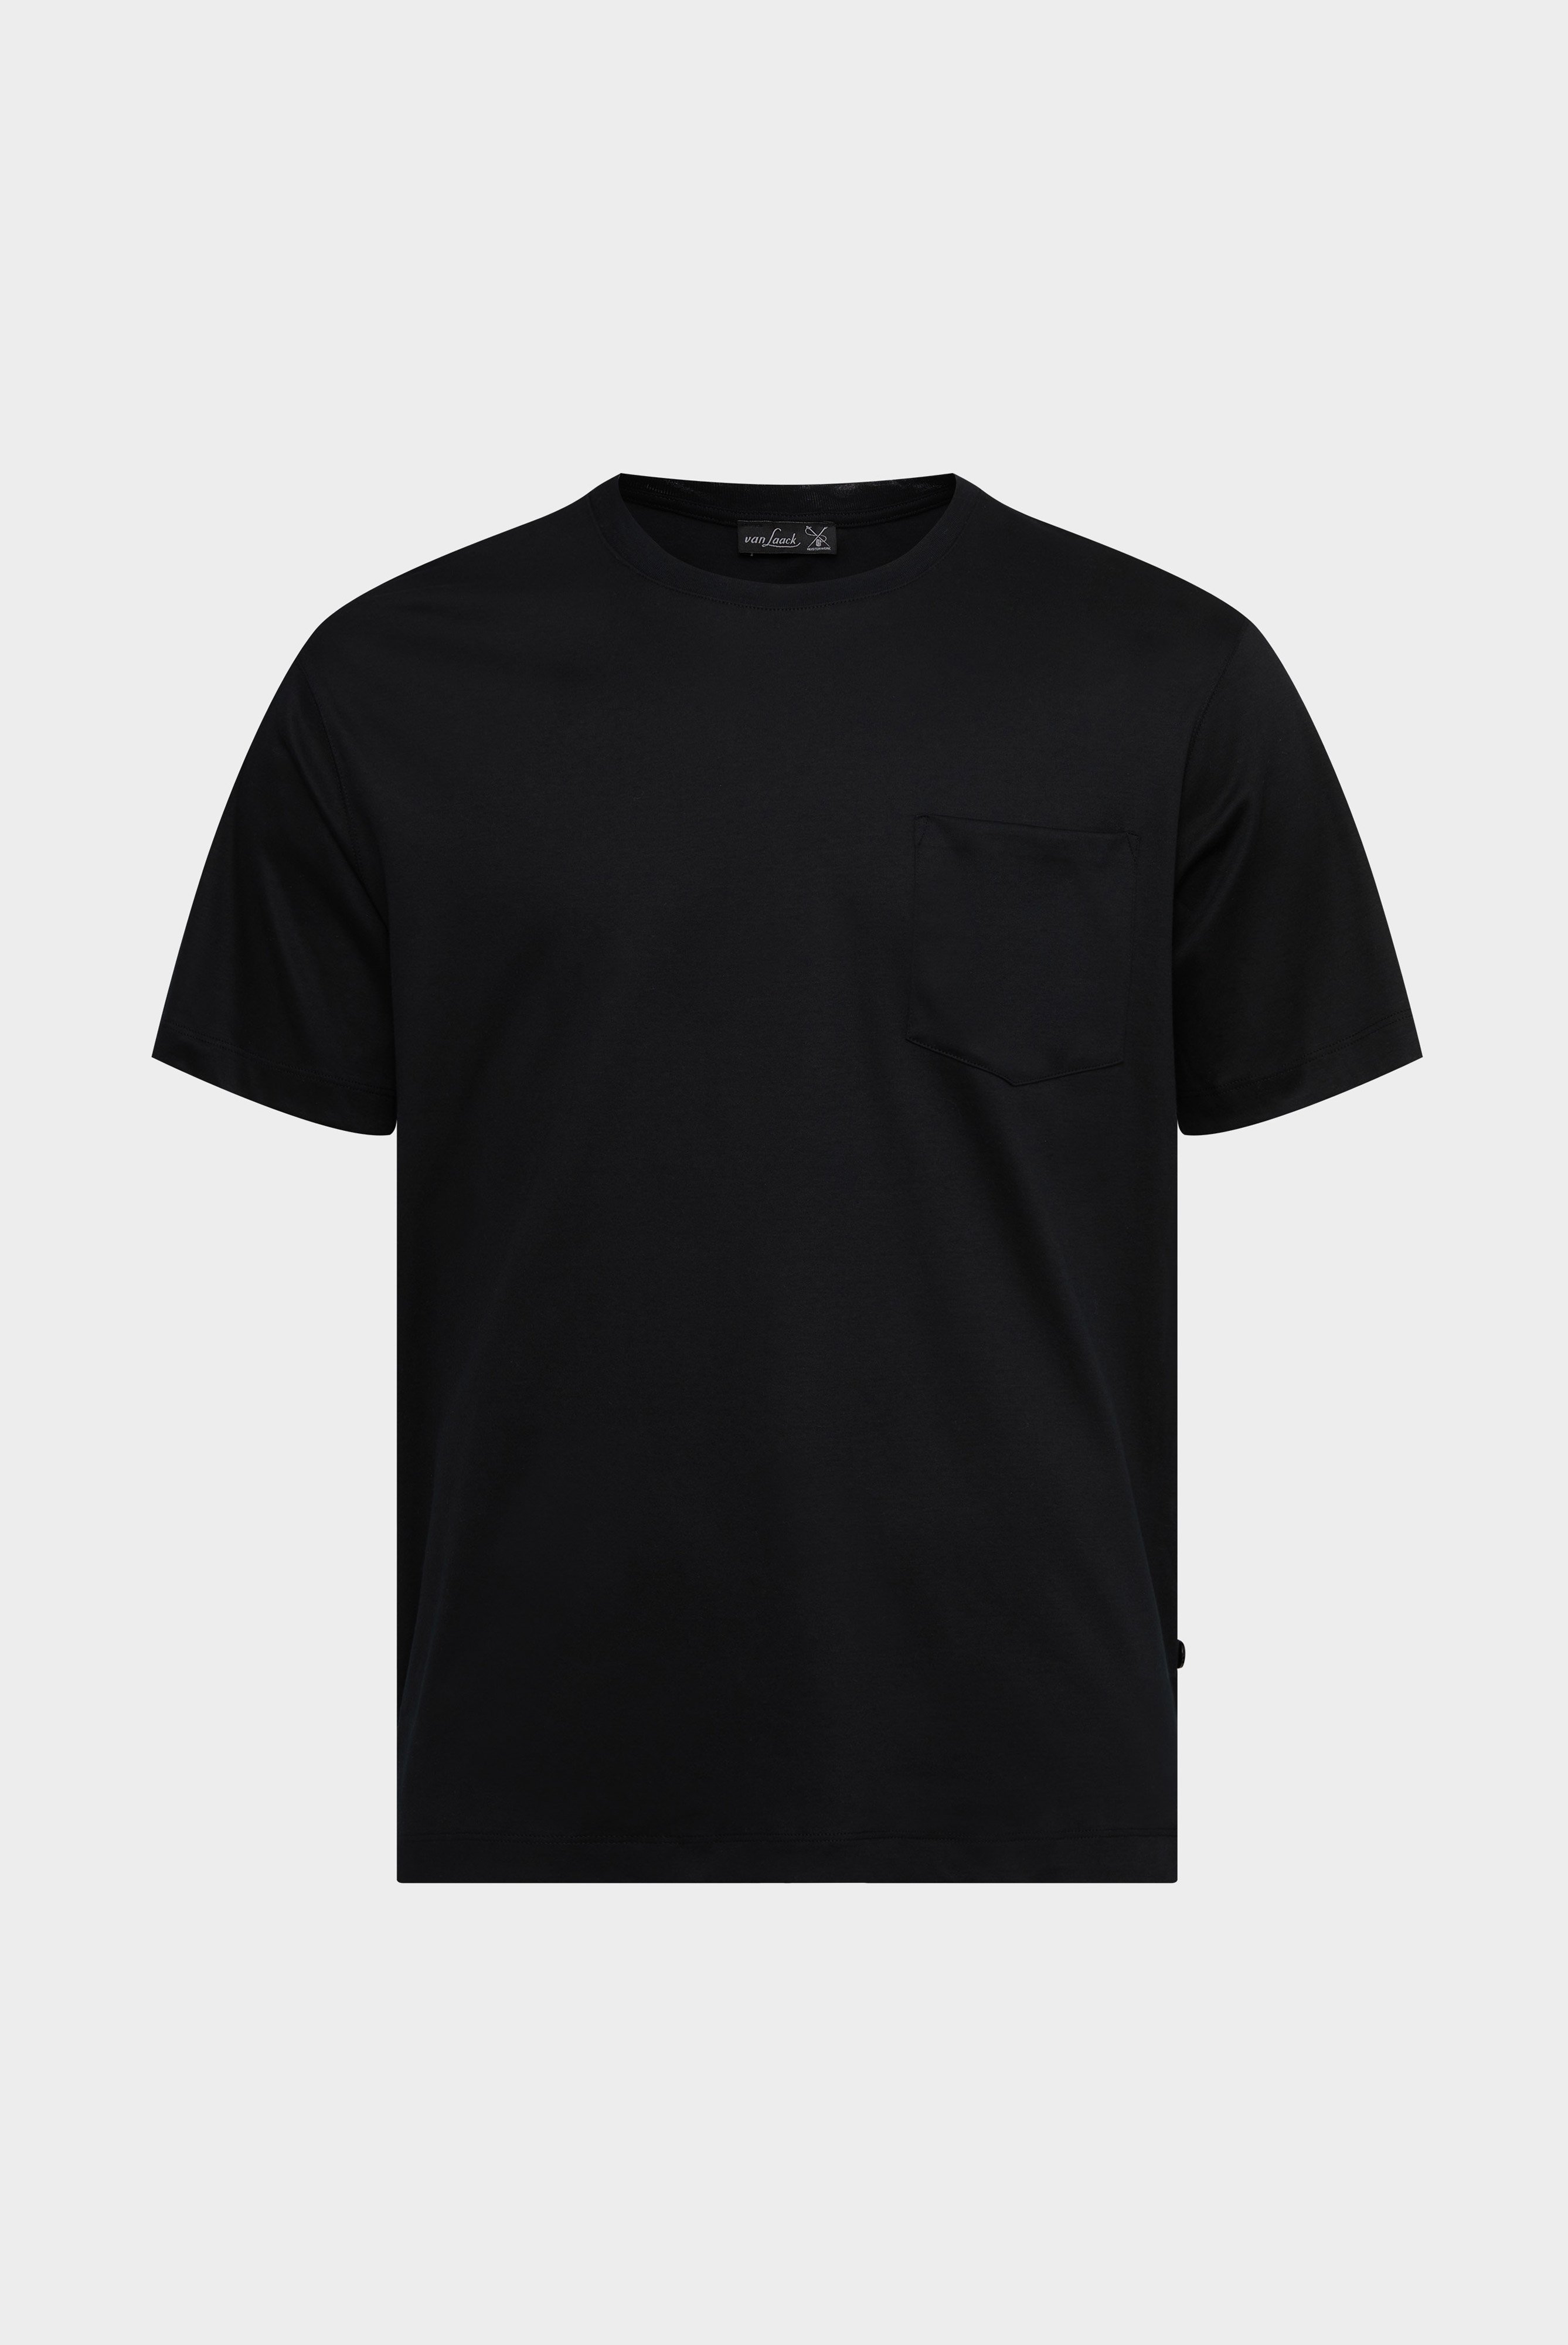 T-Shirts+Oversize Jersey T-Shirt mit Brusttasche+20.1776.GZ.180031.099.S